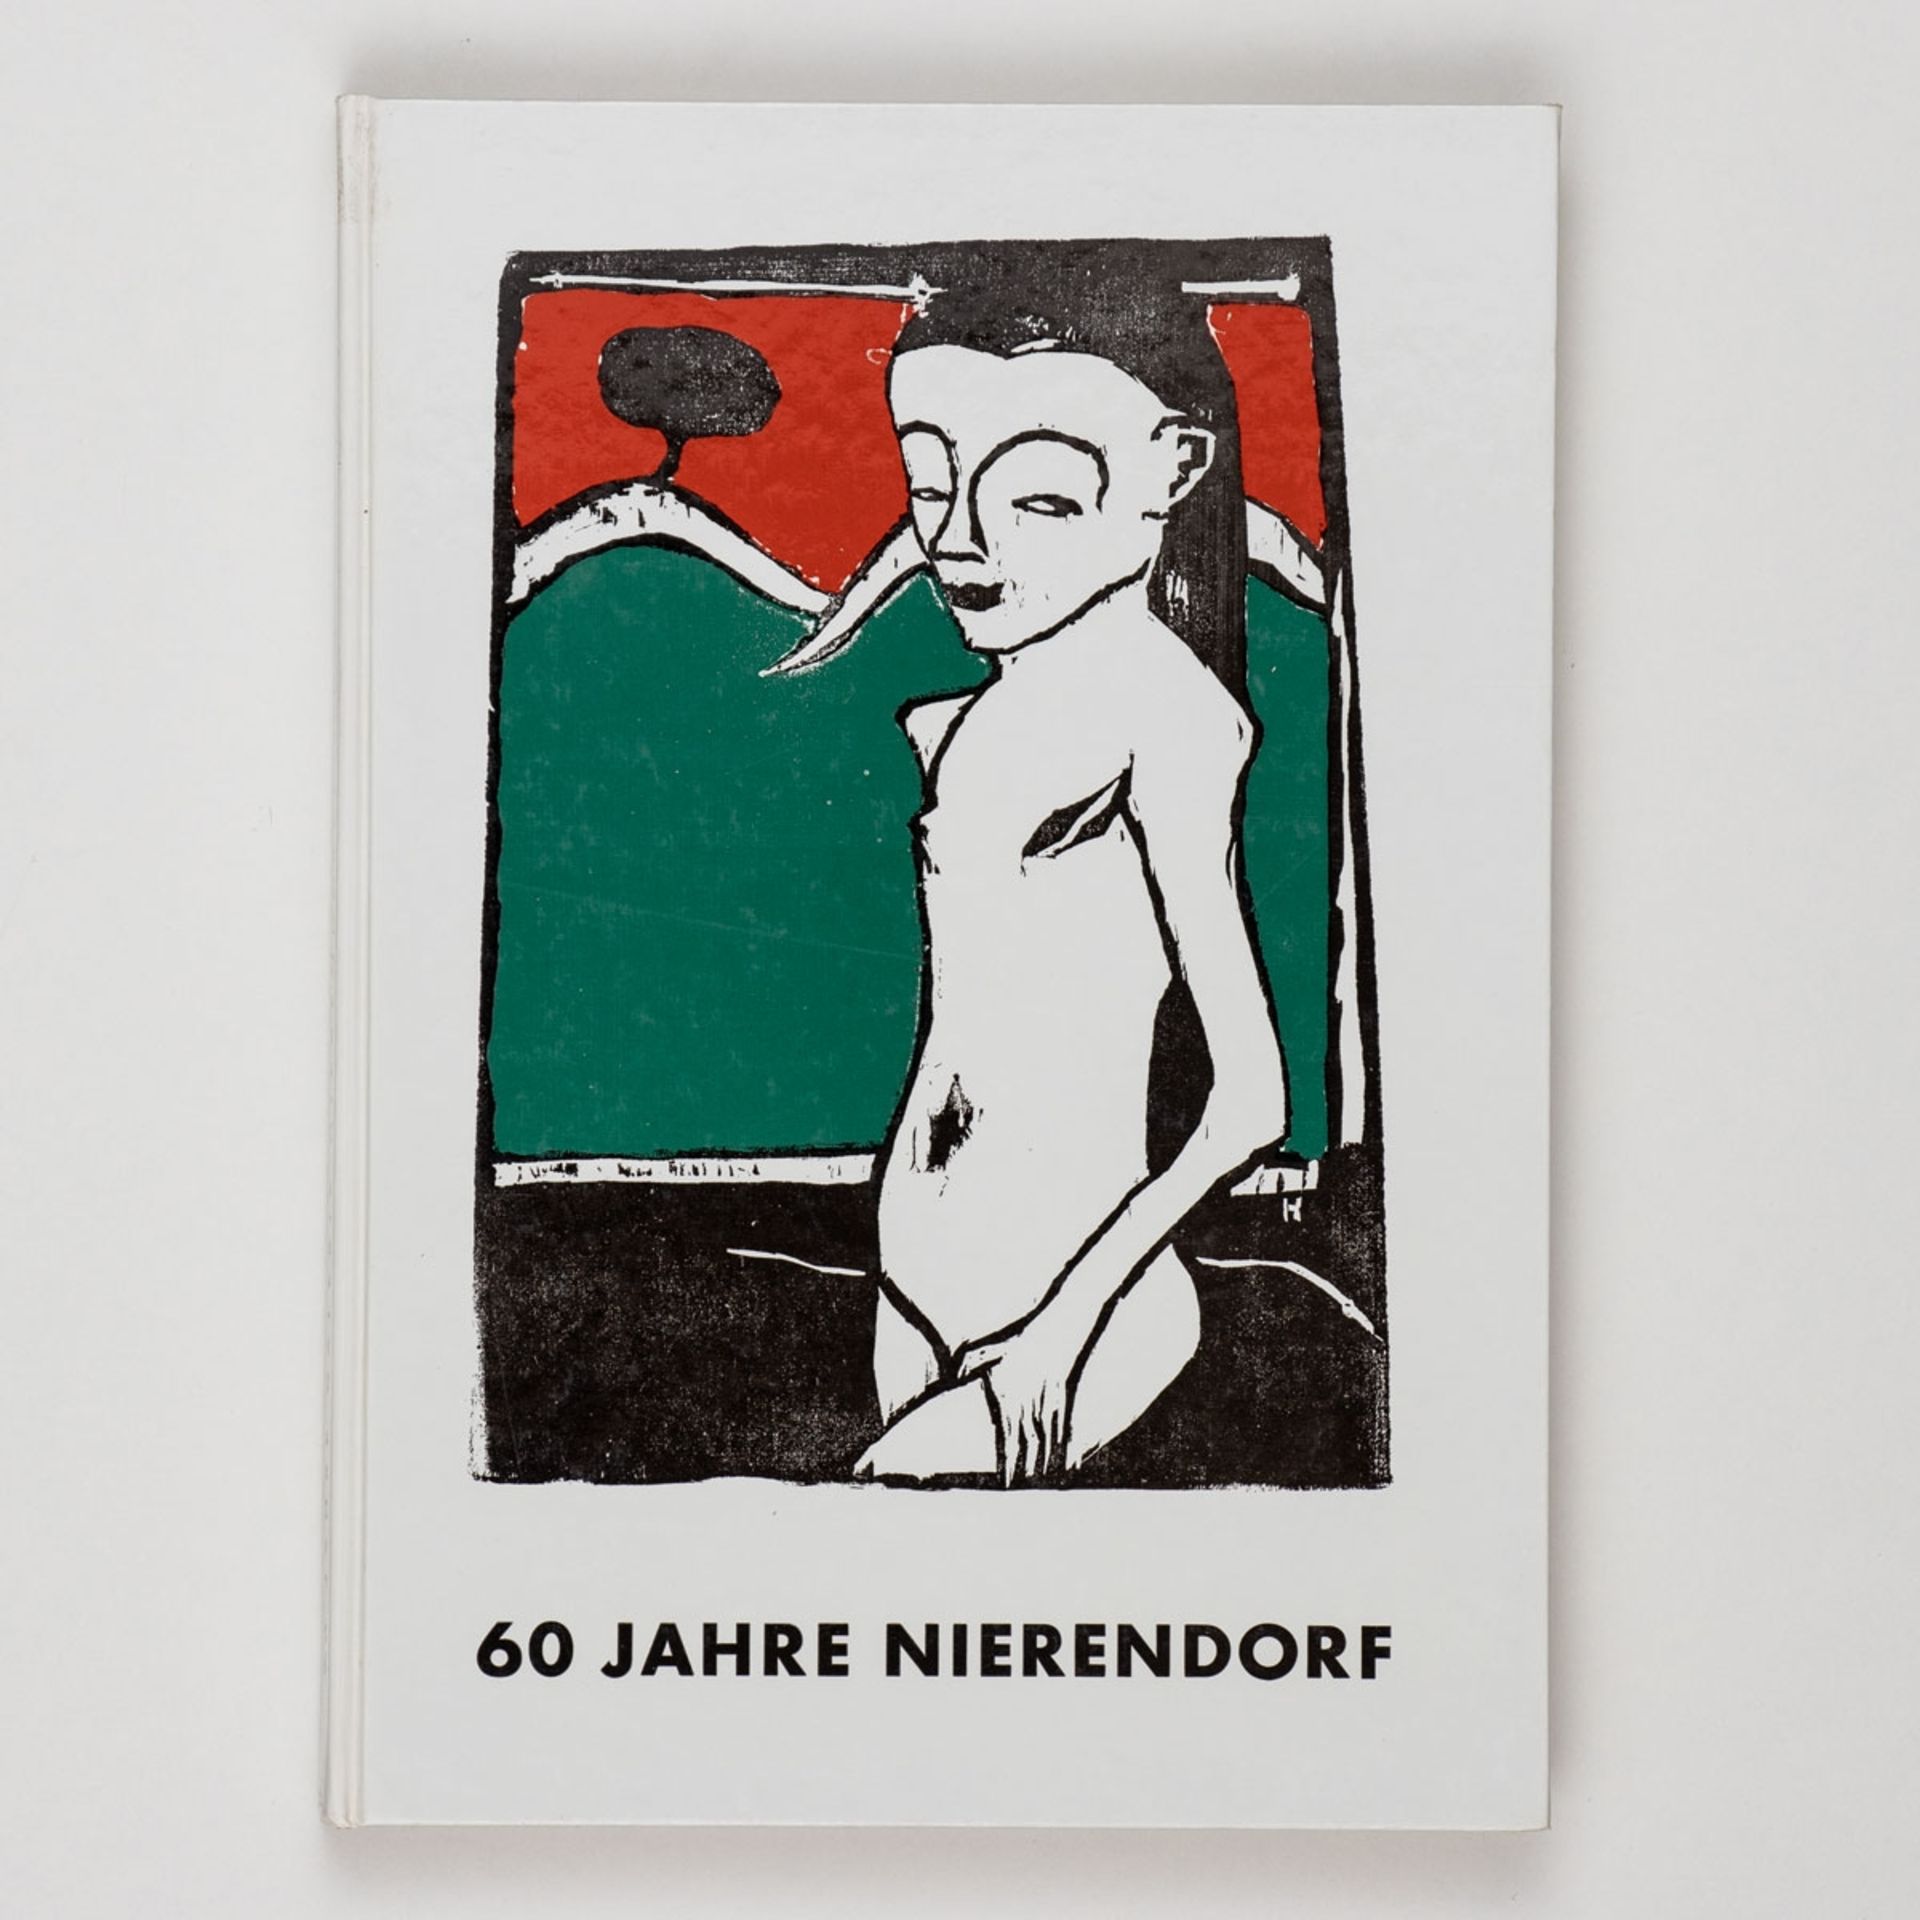 60 Jahre Galerie Nierendorf. 1920 - 1980